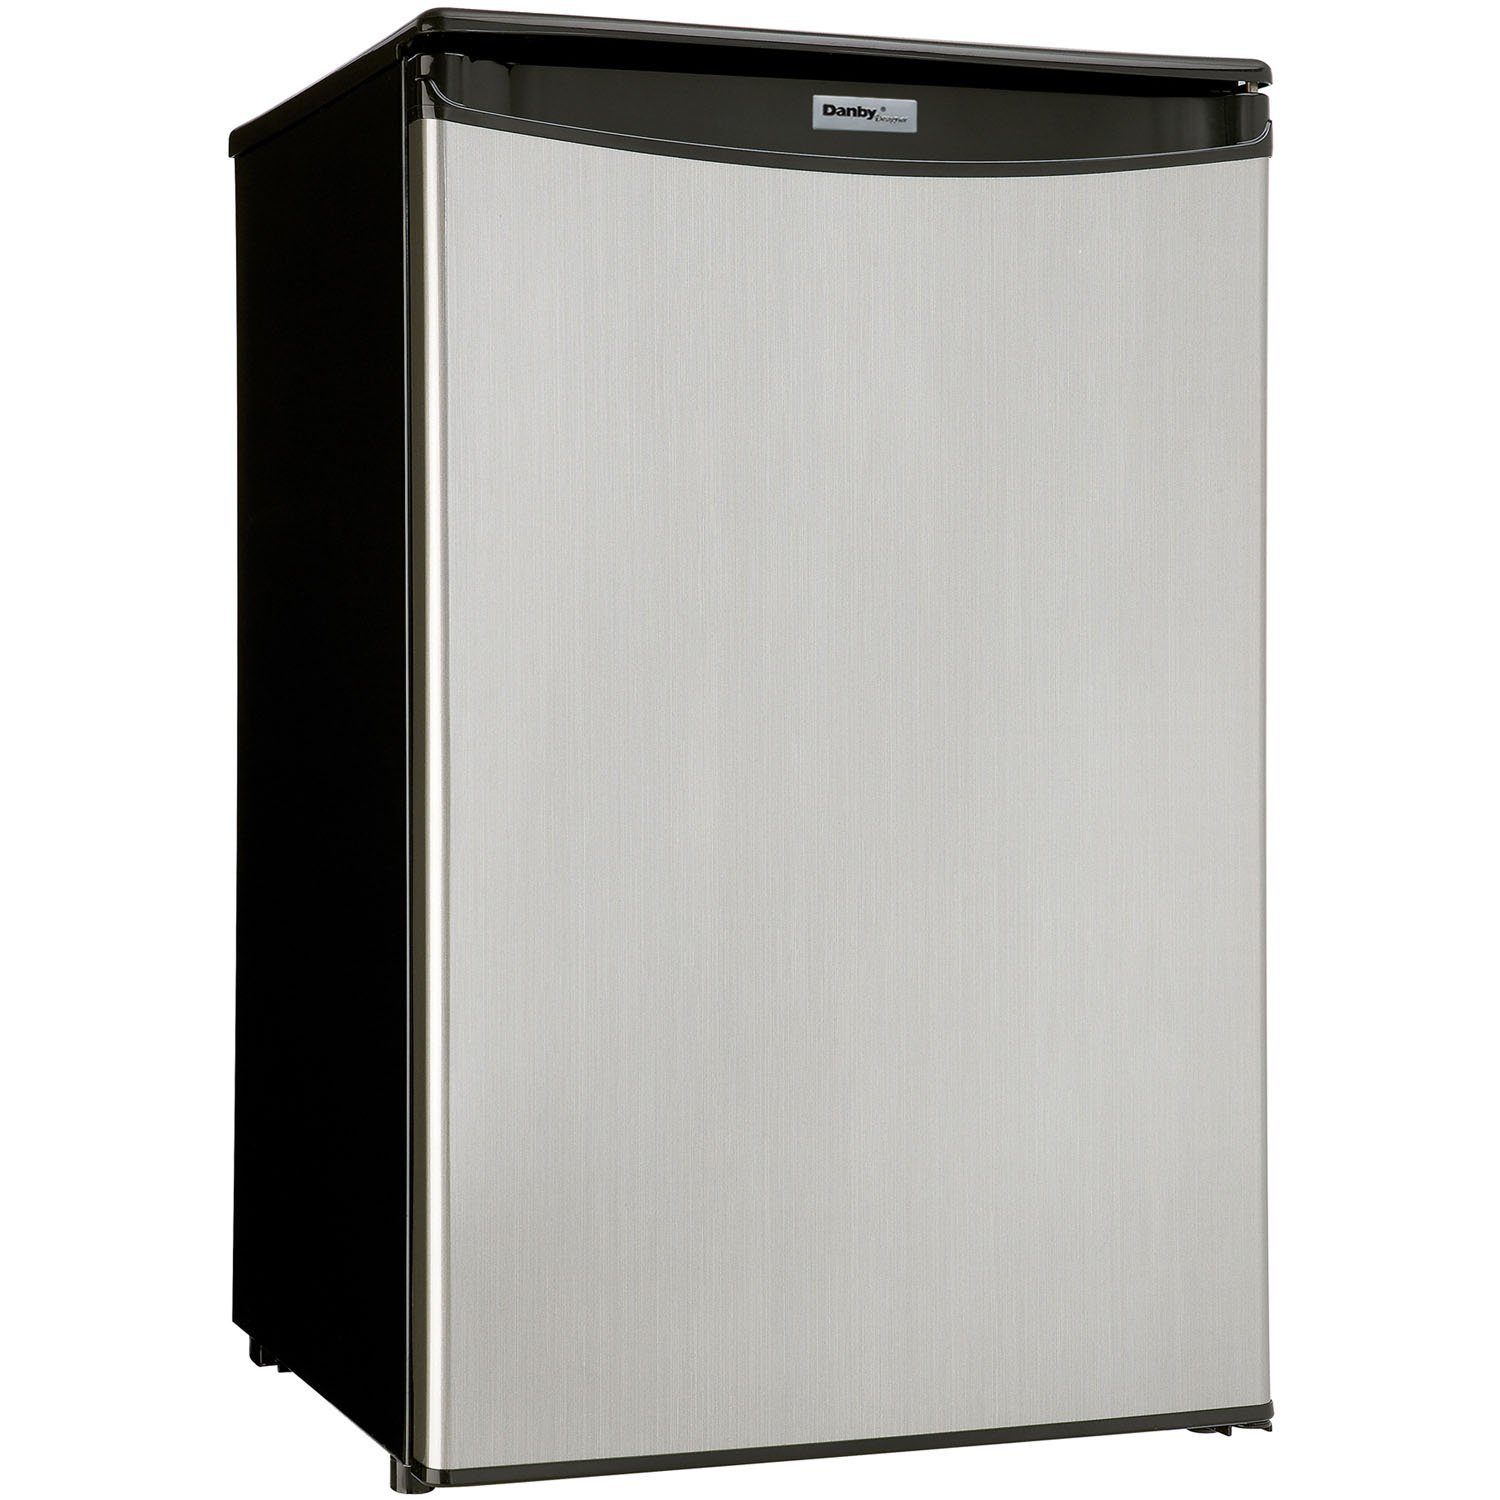 Danby DAR044A5BSLDD Compact All Refrigerator, Spotless Steel Door, 4.4 Cubic Feet